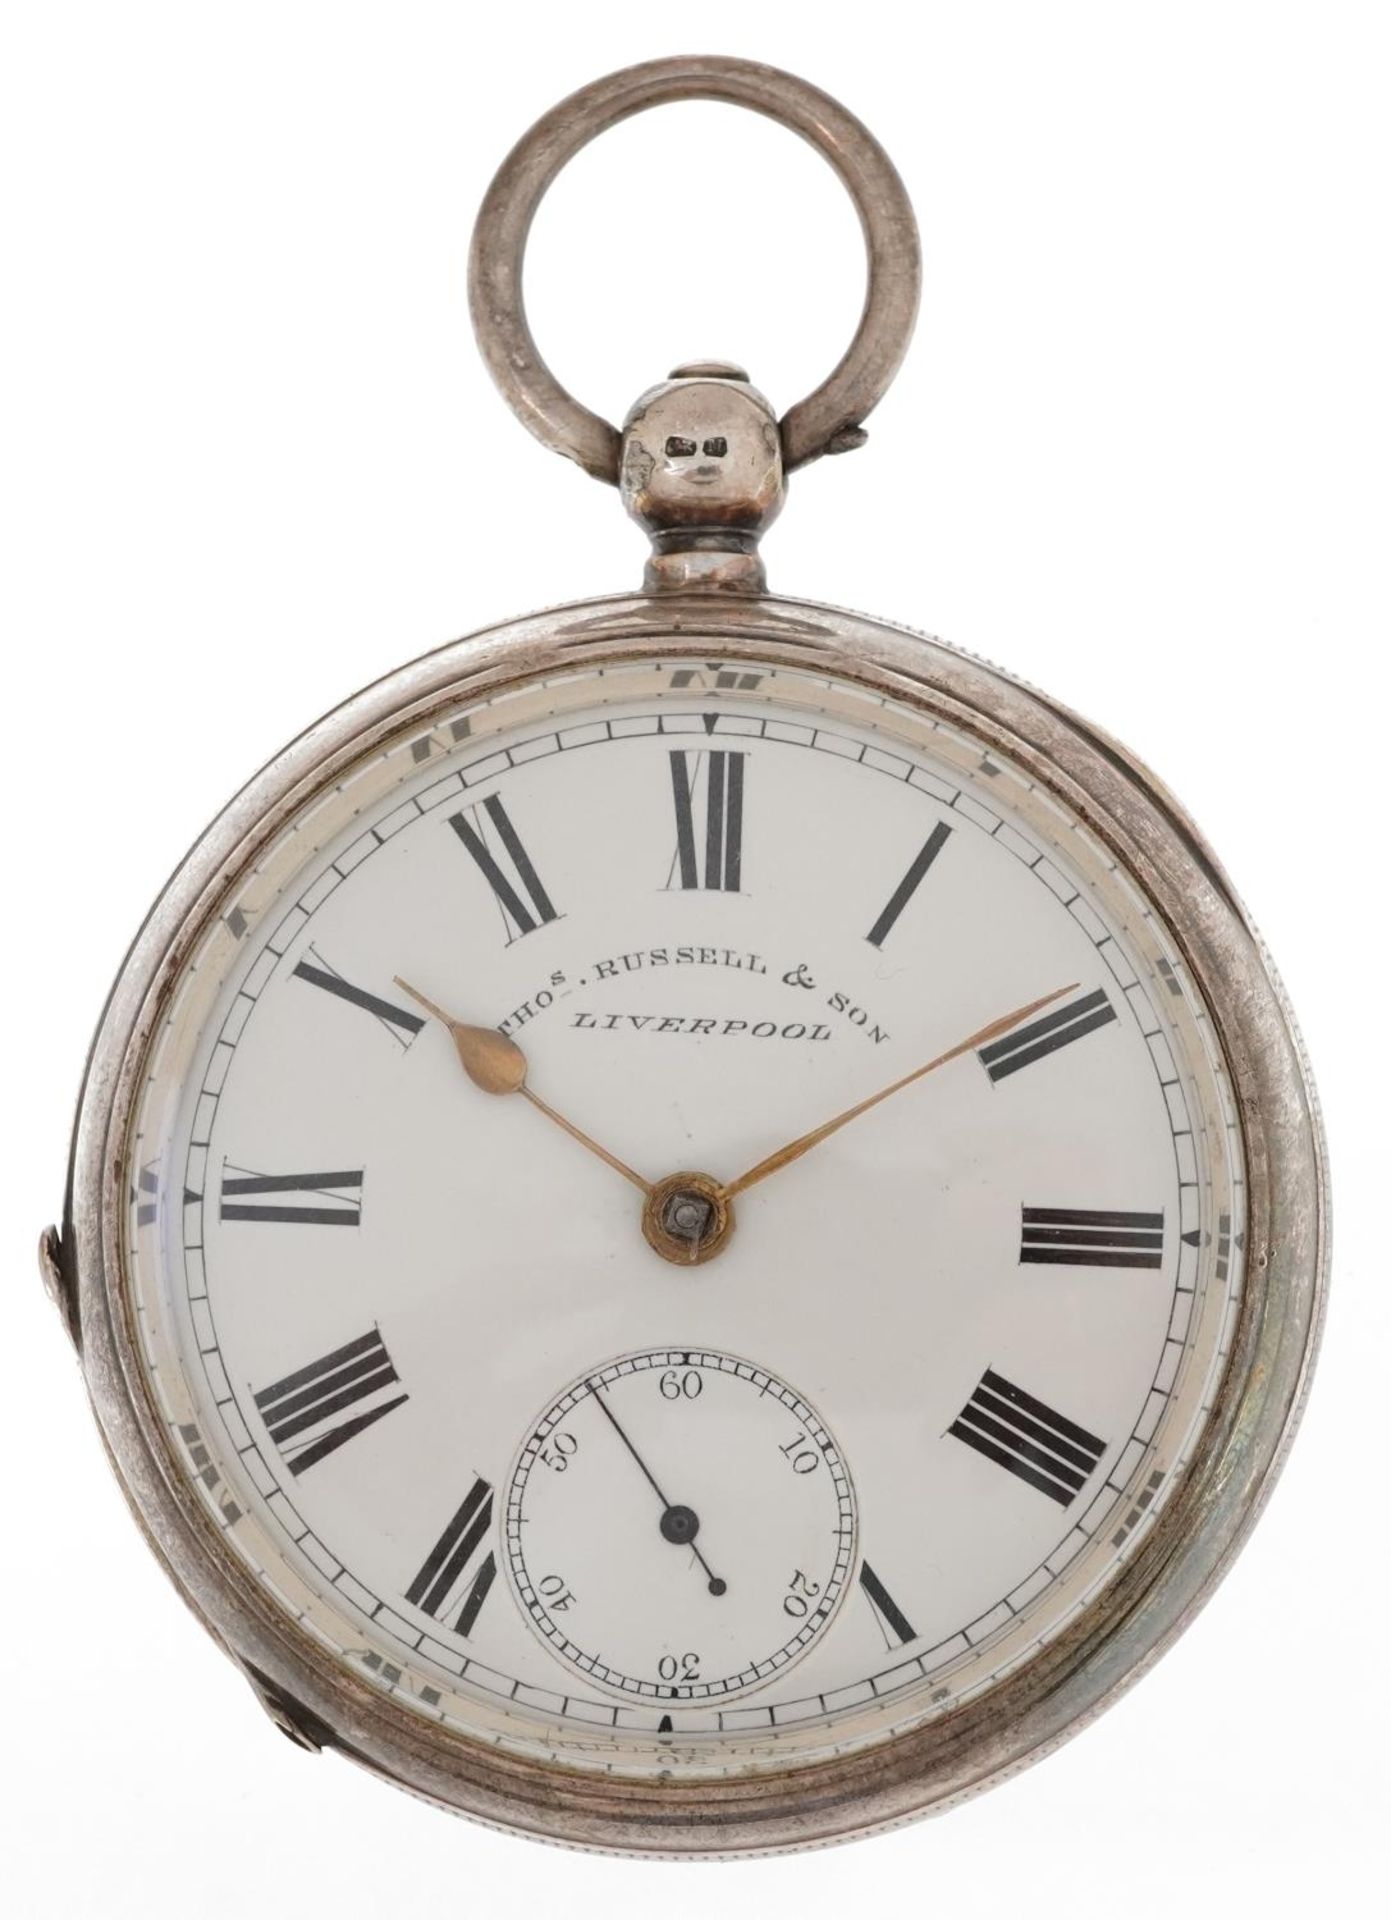 Thomas Russell & Son, Victorian gentlemen's silver key wind open face pocket watch having